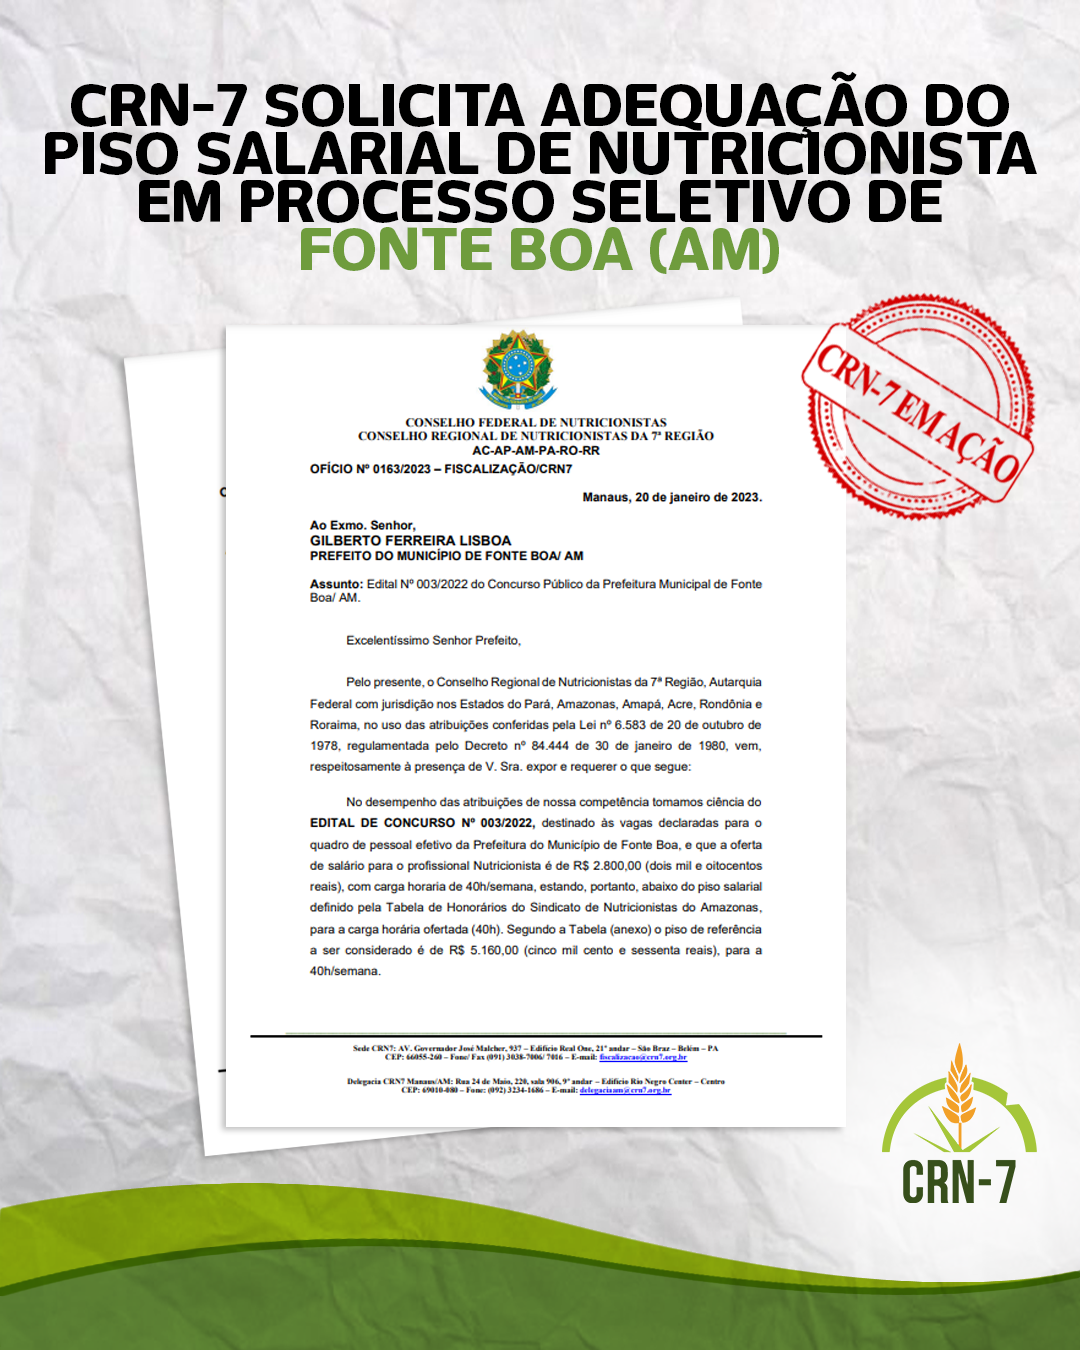 You are currently viewing CRN-7 SOLICITA ADEQUAÇÃO DO PISO SALARIAL DE NUTRICIONISTA EM PROCESSO SELETIVO DE<br>FONTE BOA (AM)